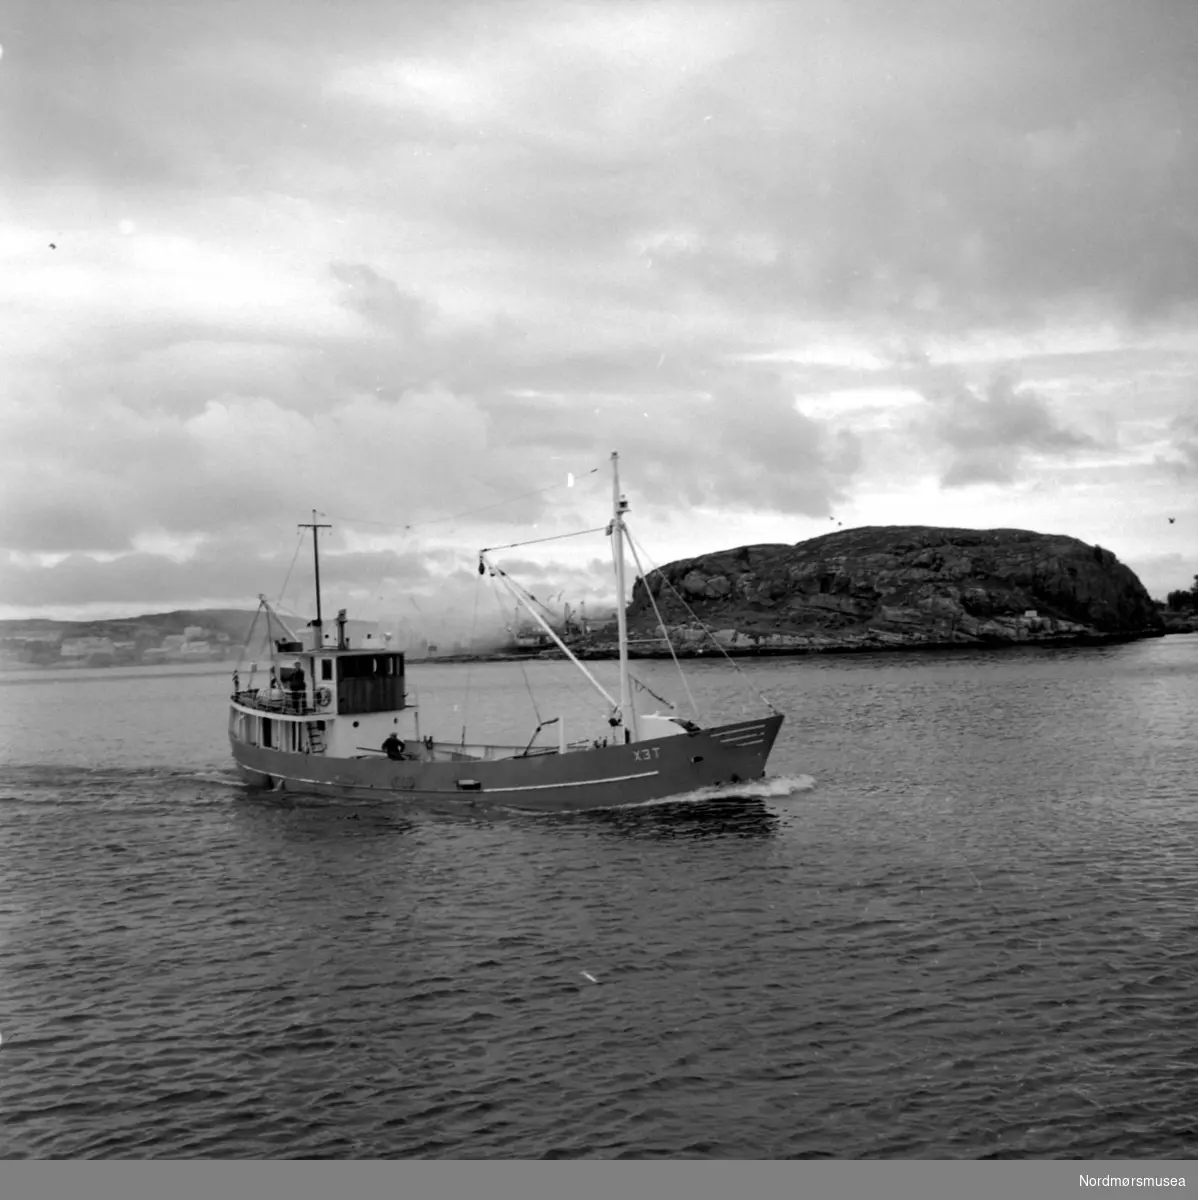 Brannbåten "Tex" i Kristiansund. Datering er trolig 1966. Fotograf er Nils Williams. Fra Nordmøre museums fotosamlinger